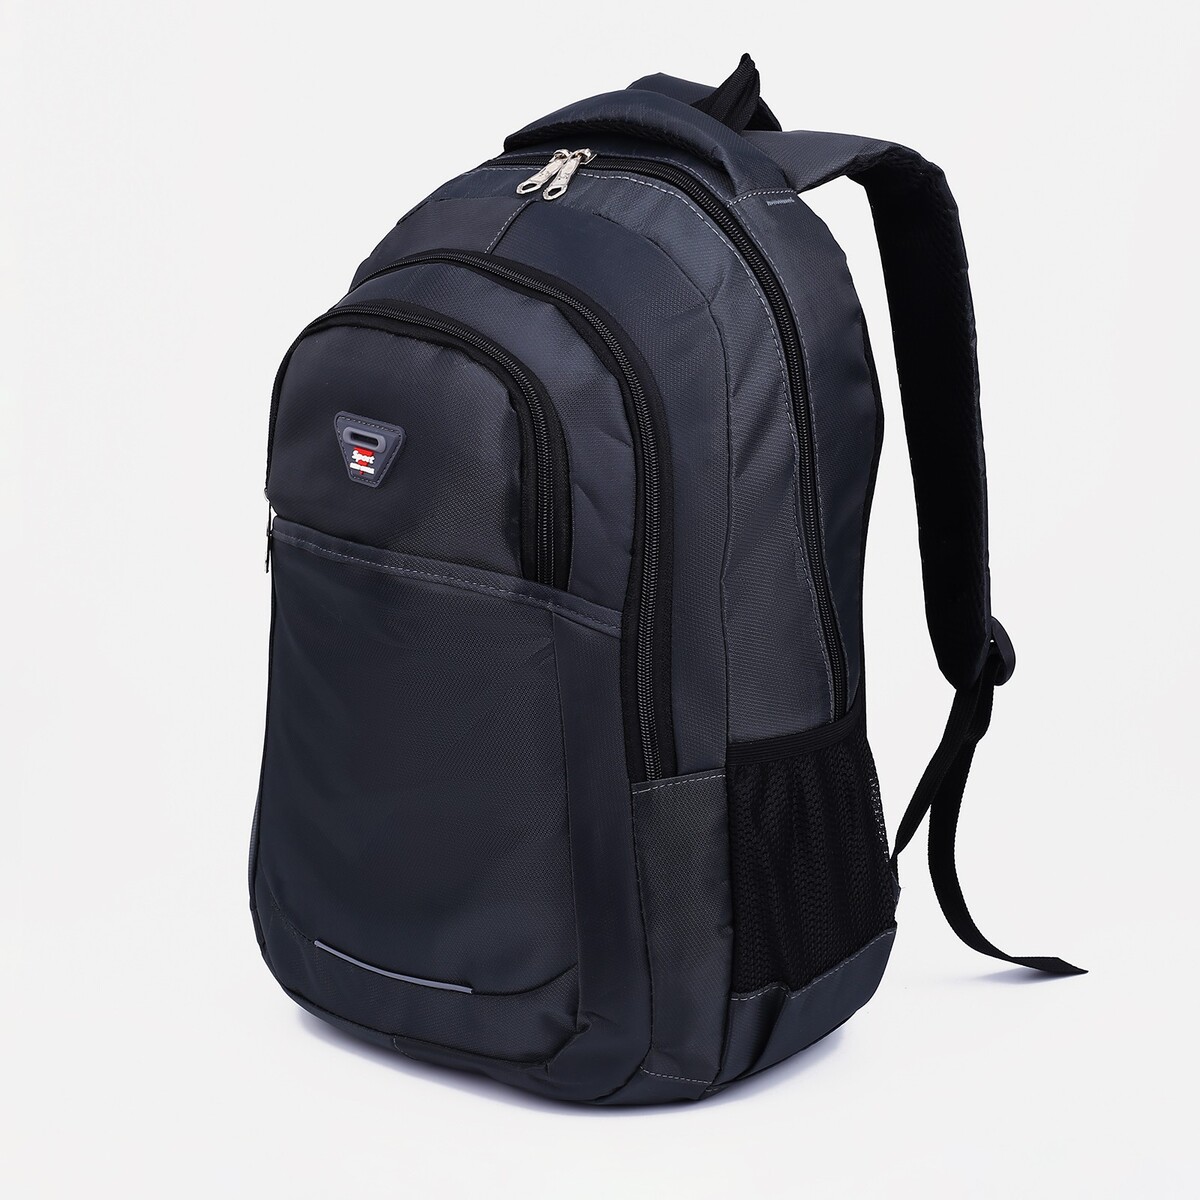 Рюкзак молодежный из текстиля, 2 отдела, 2 кармана, цвет темно-серый картридж струйный hp 761 cm996a темно серый